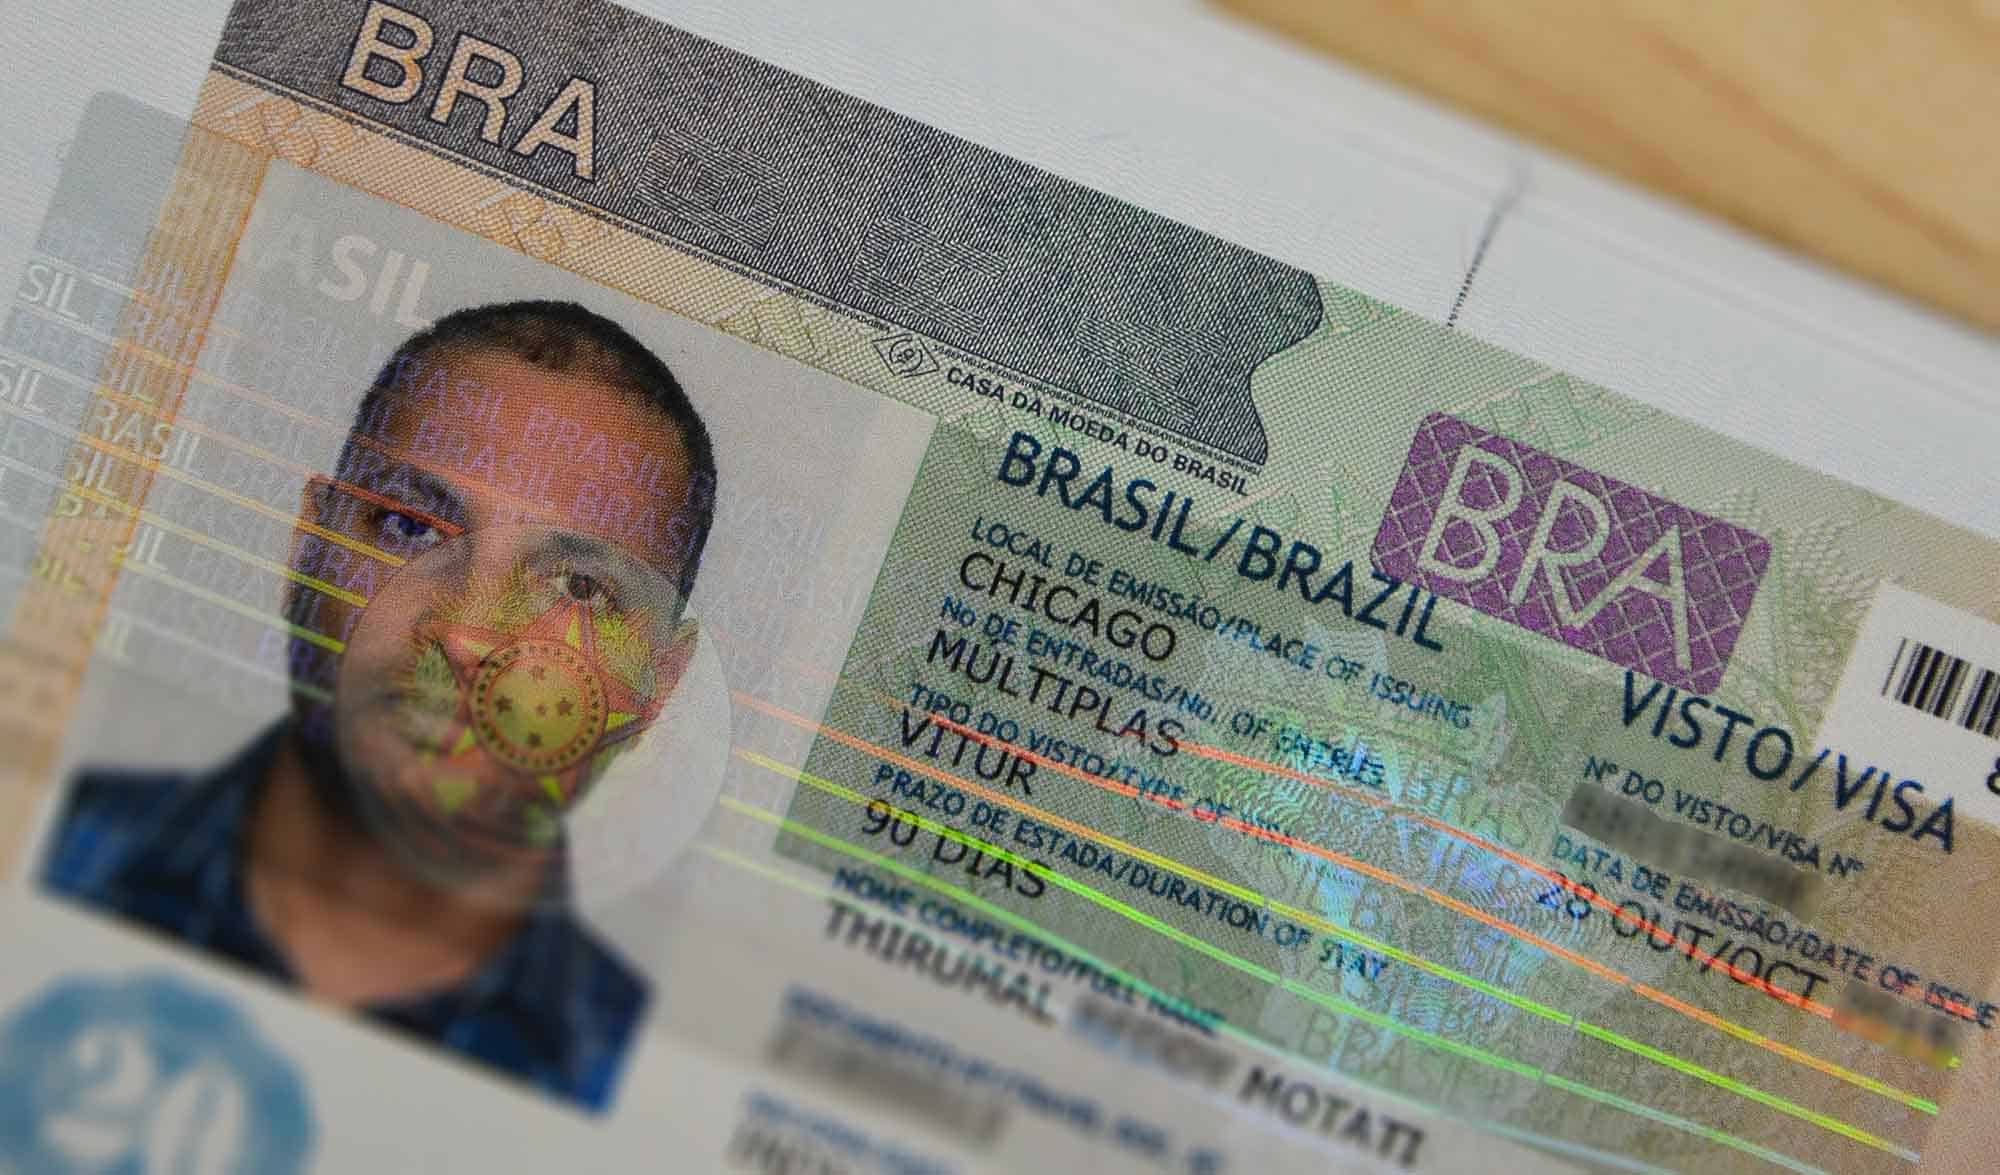 Brazil Tourist Visa Image